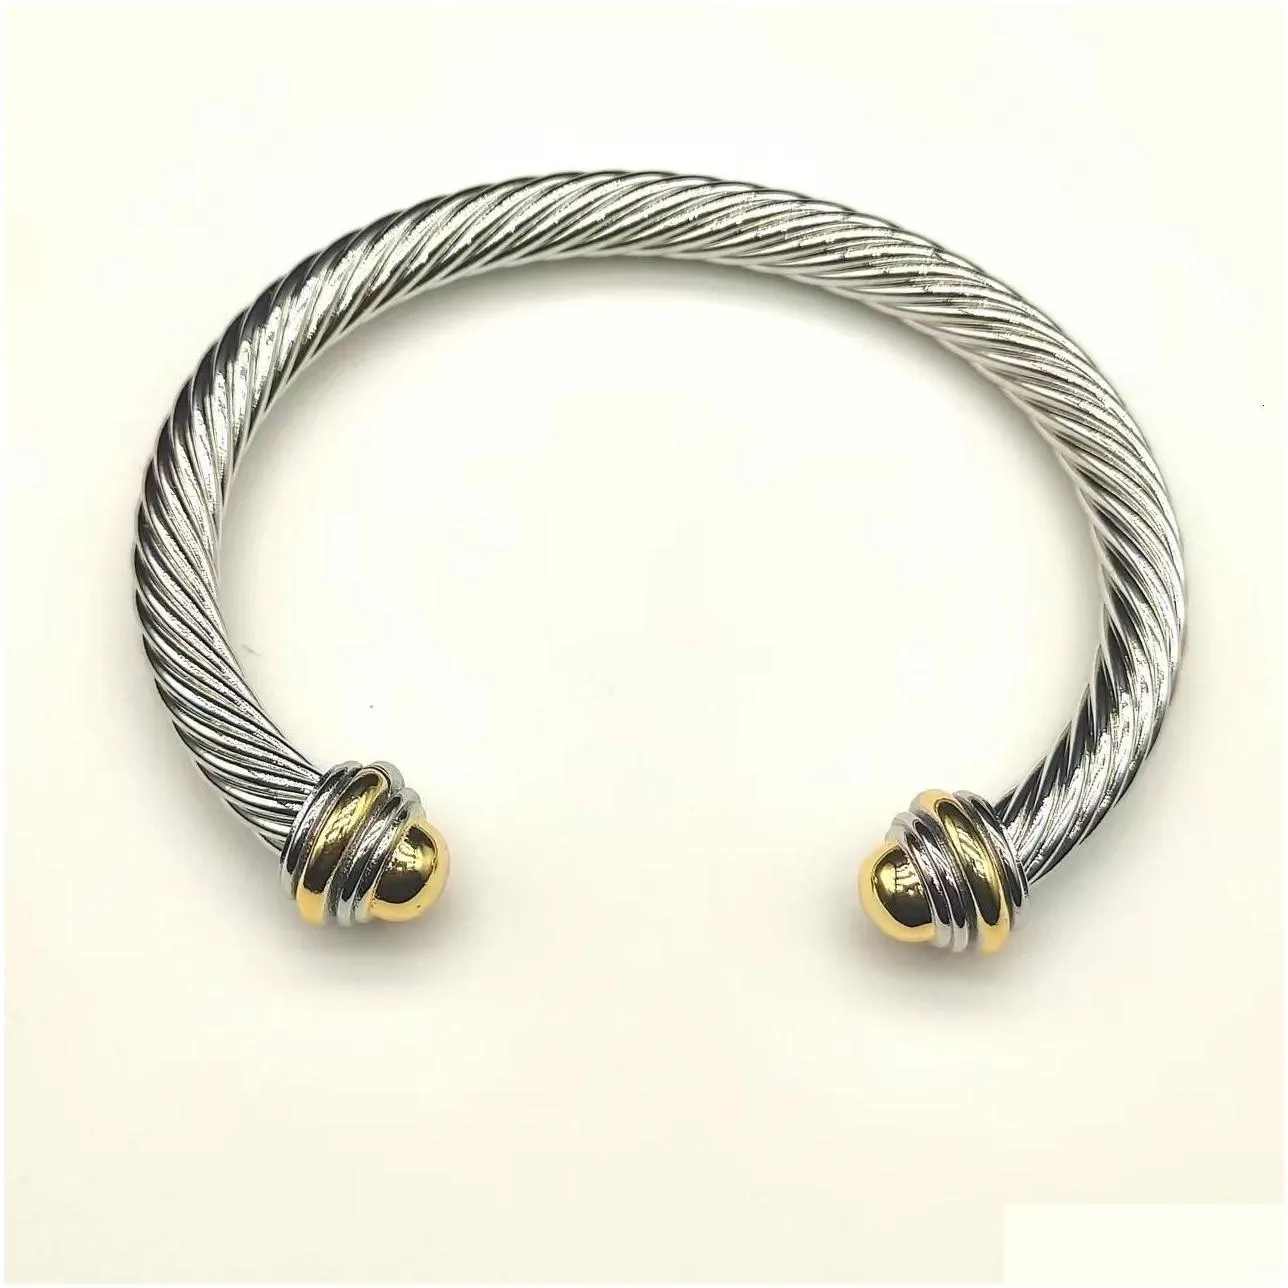 Bangle David eurman gelang pemisah warna kepala bulat 7MM dalam perak murni dengan lapisan emas mawar 18K 230907